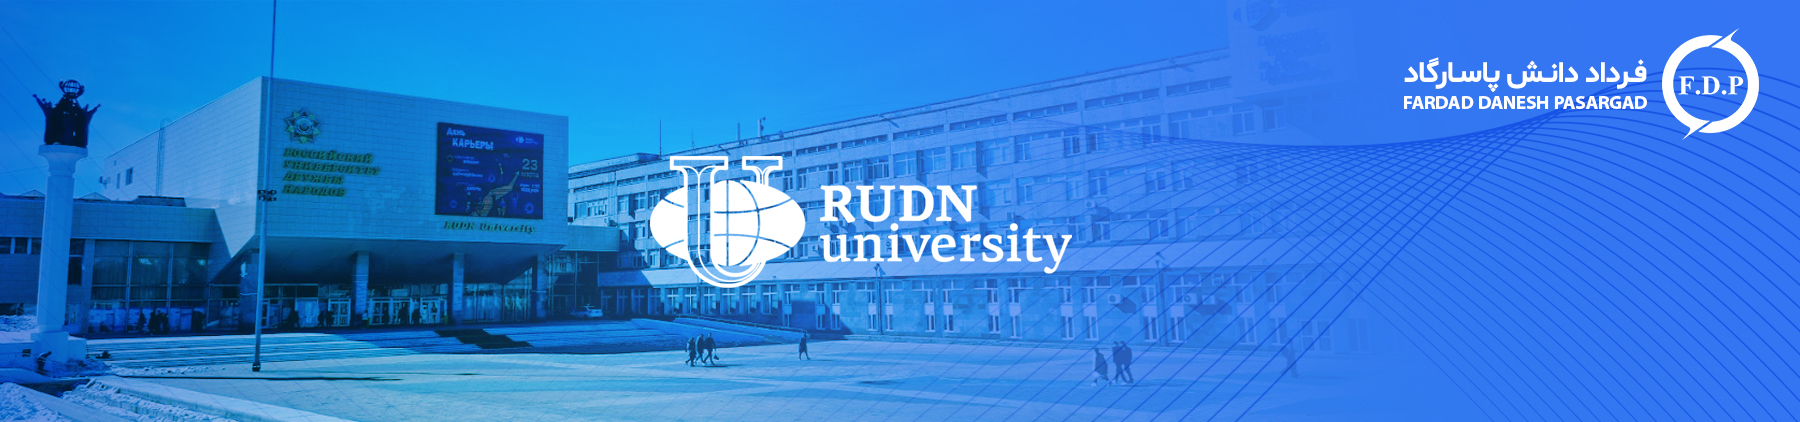 rudn university